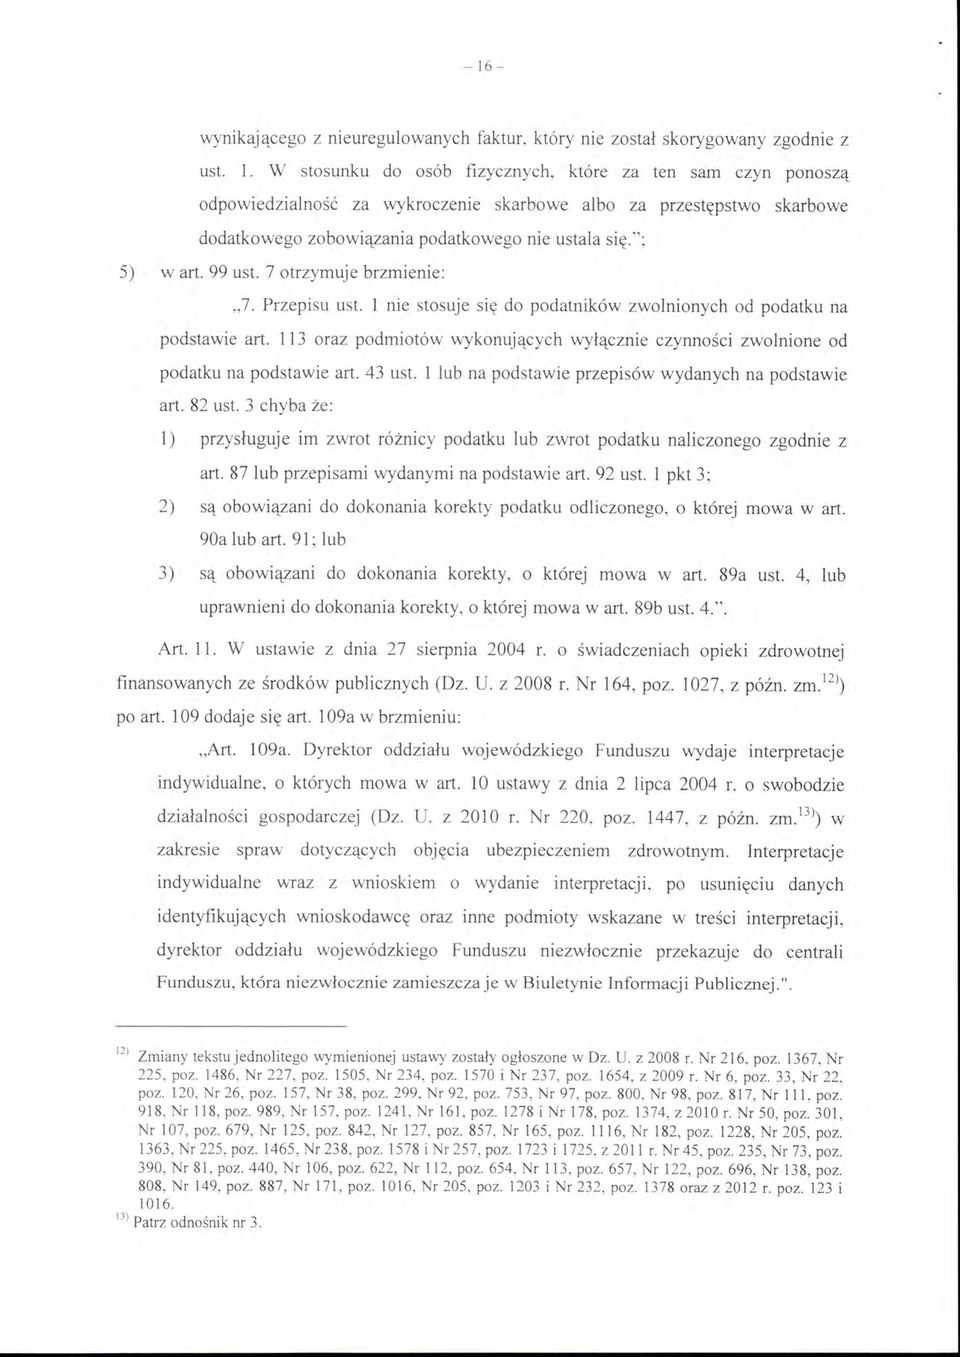 99 ust. 7 otrzymuje brzmienie: "7. Przepisu ust. l nie stosuje się do podatników zwolnionych od podatku na podstawie art.